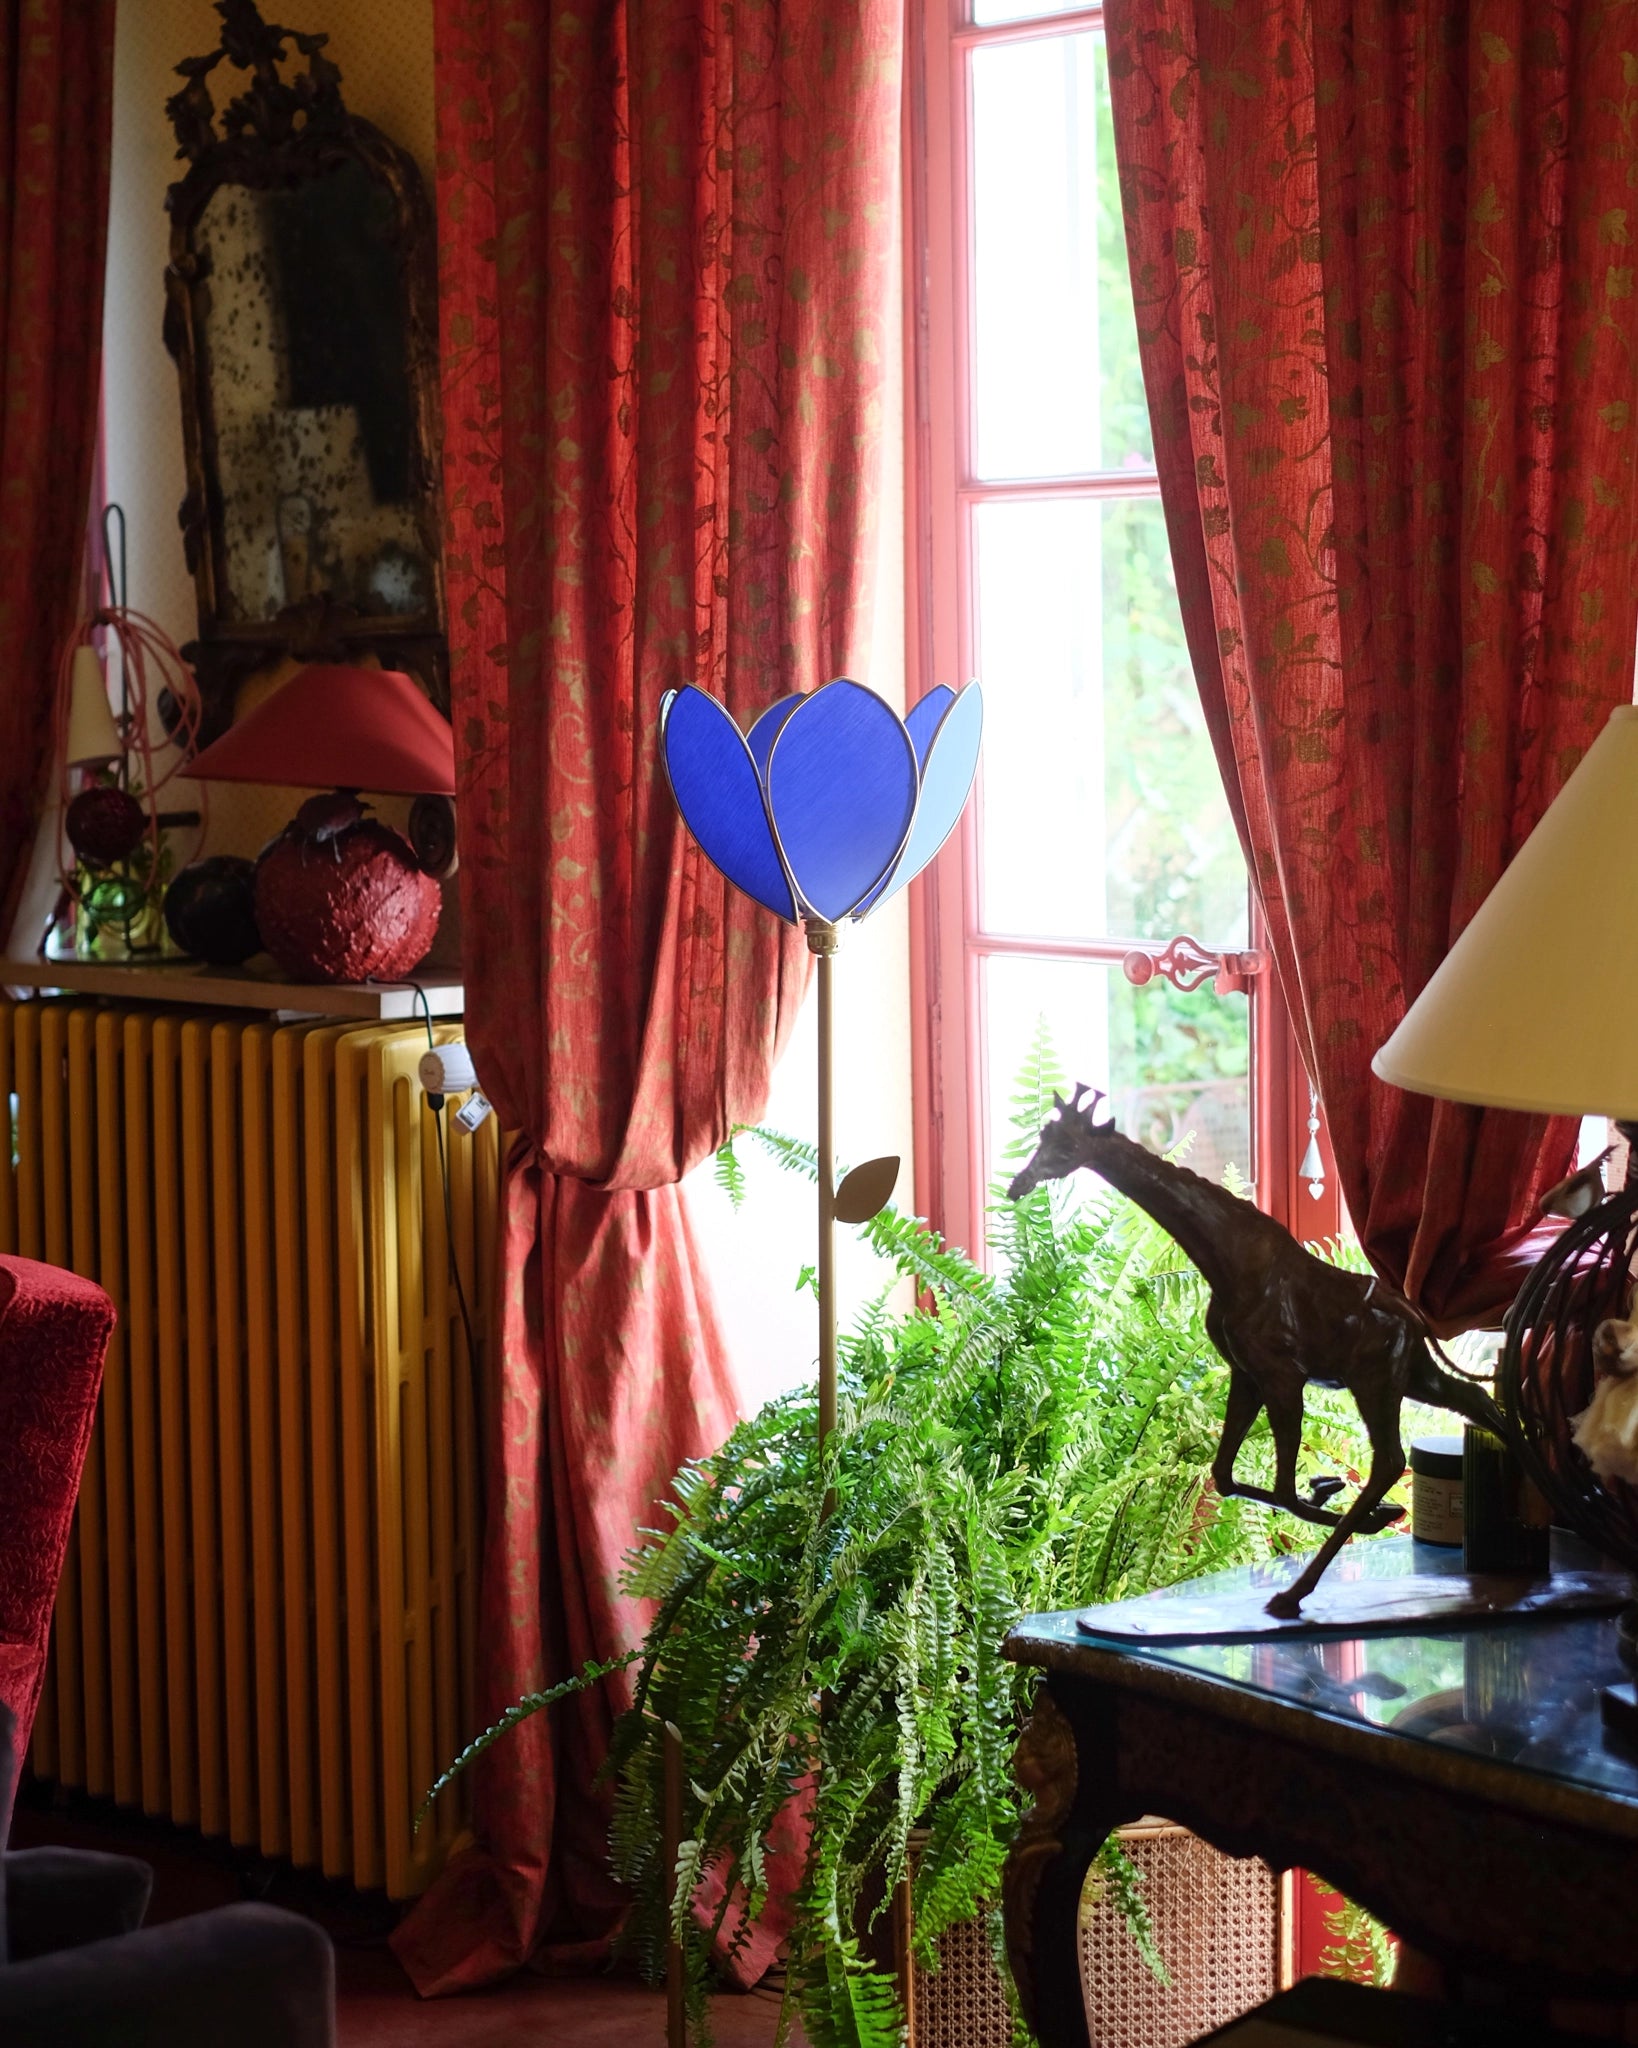 Pied de lampadaire et abat-jour fleur simple - Bleu royal